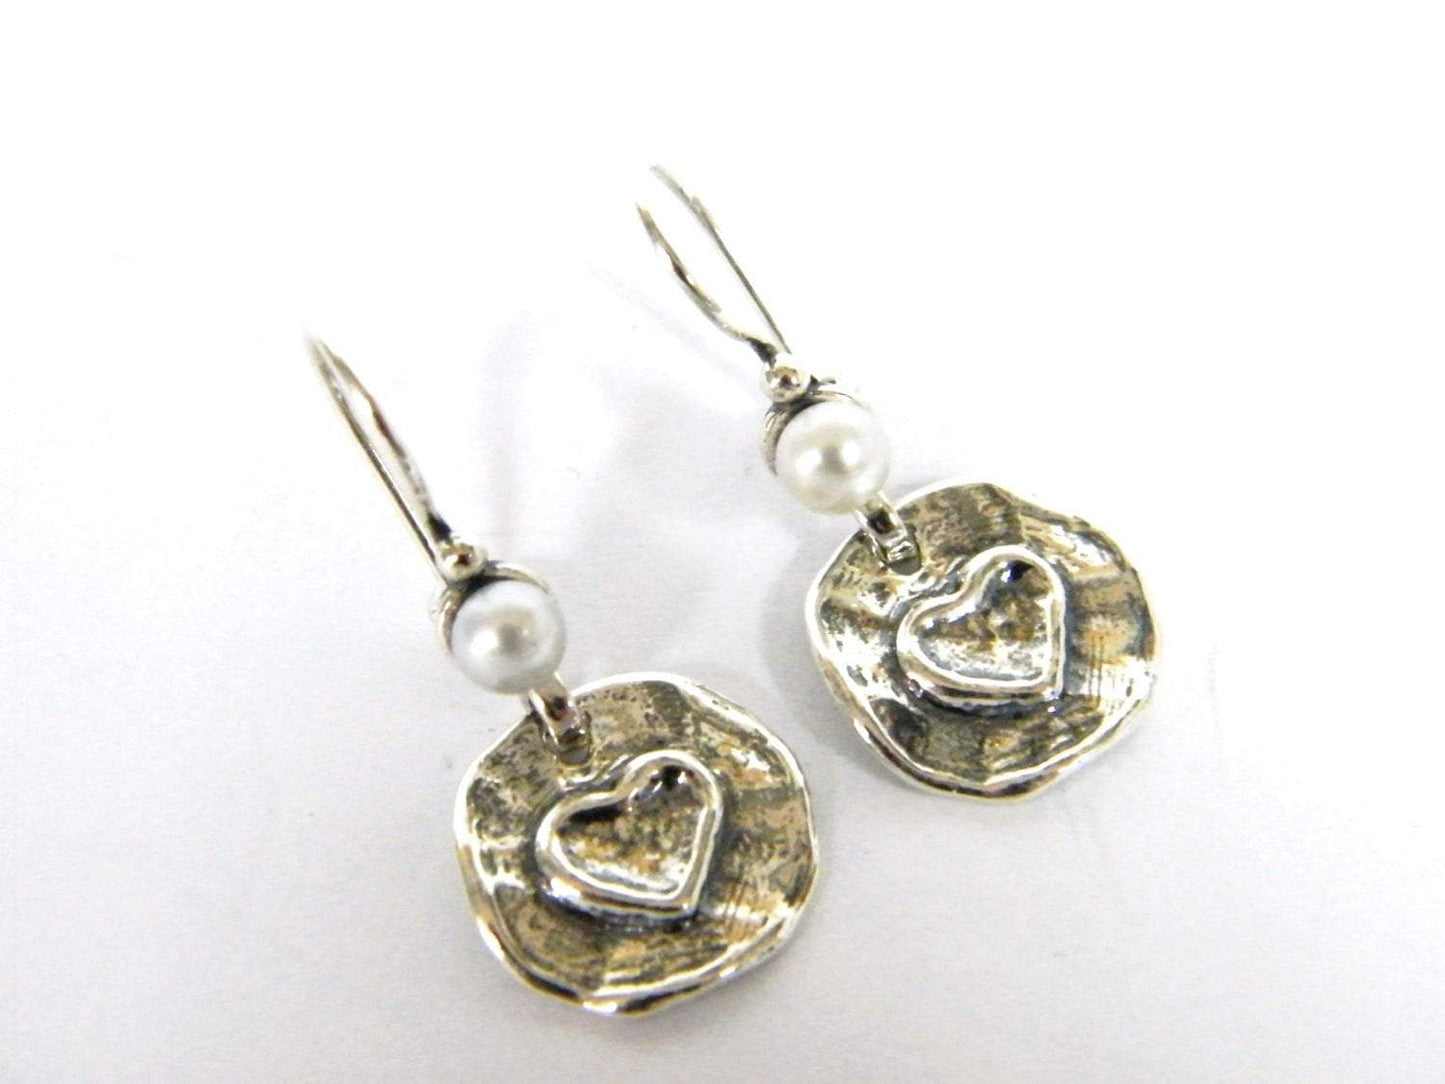 Bluenoemi Jewelry Earrings silver Earrings sterling silver with pearls heart deco